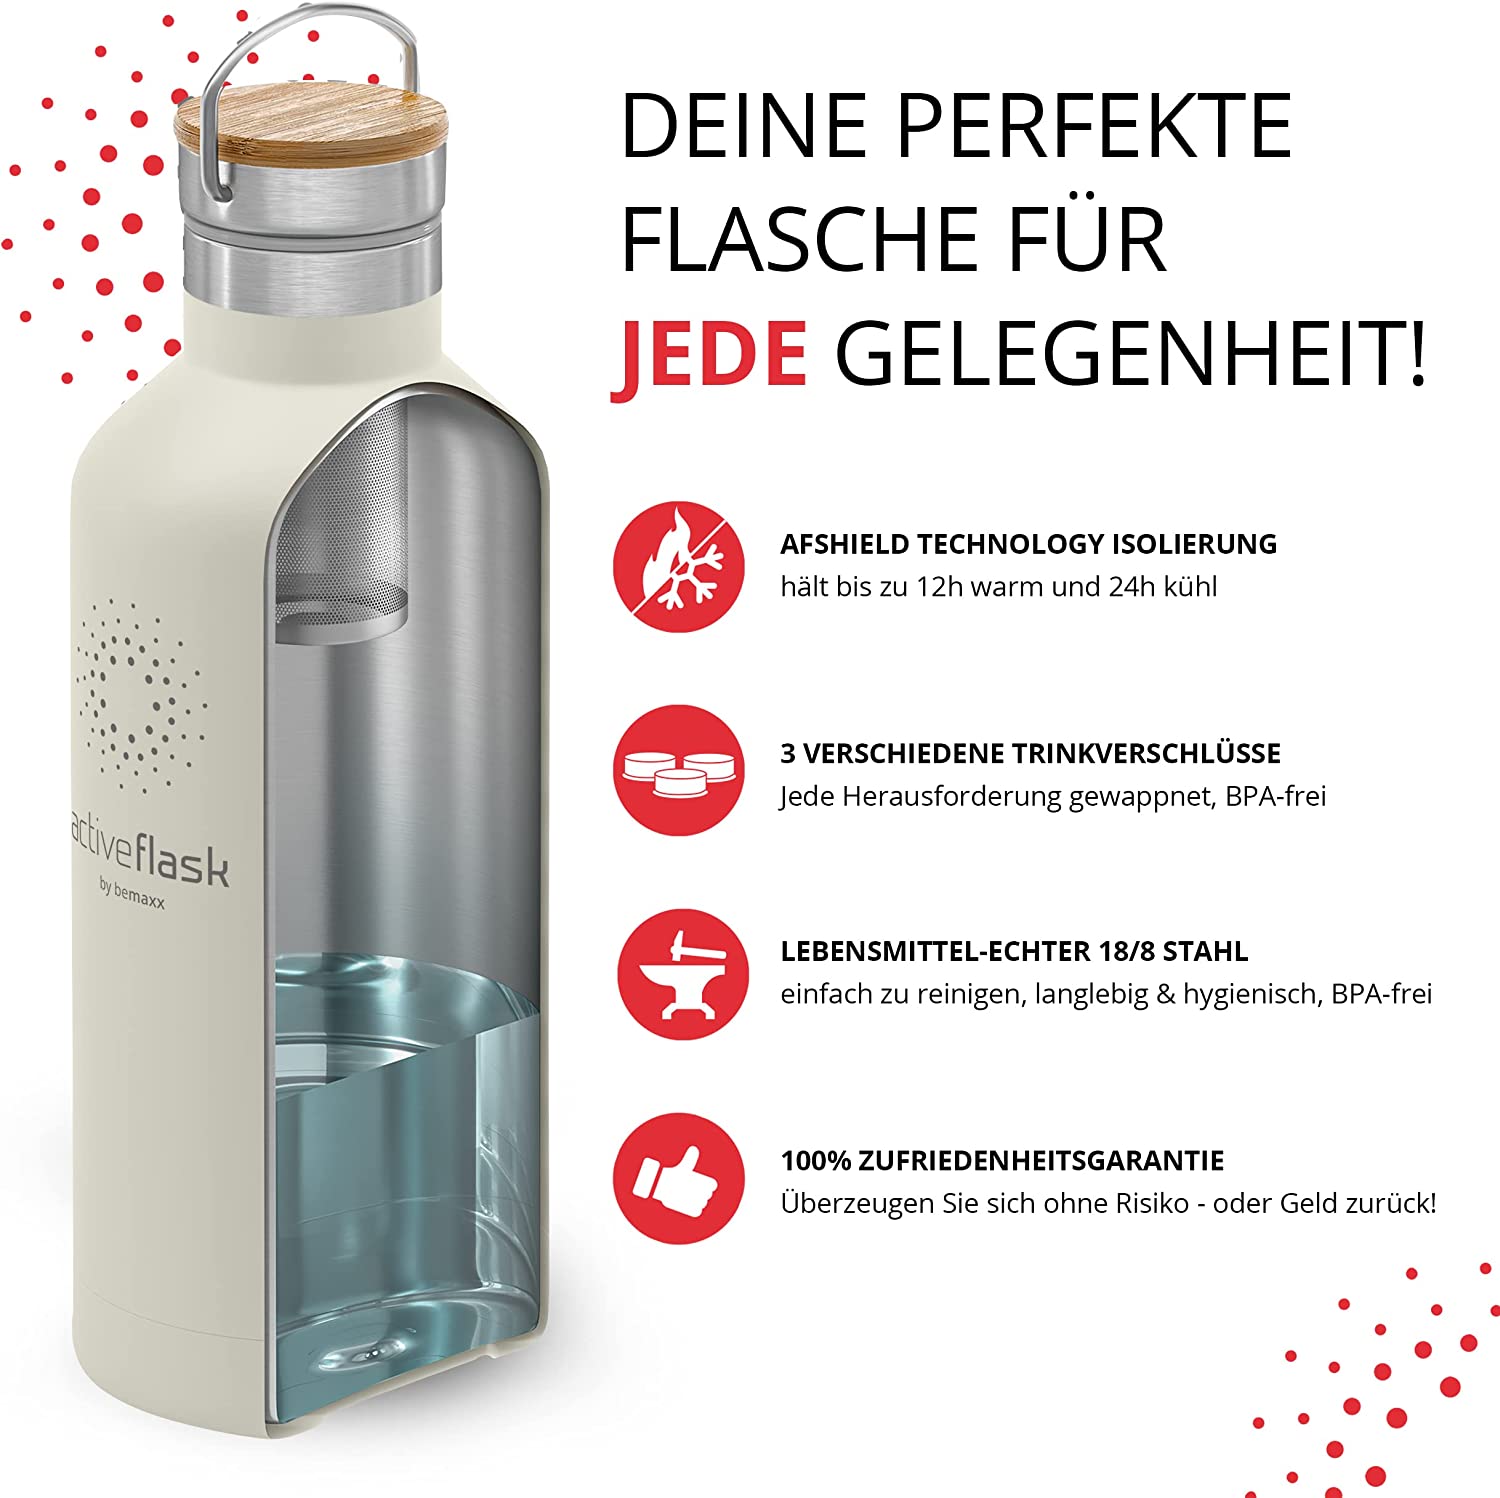 BeMaxx Trinkflasche Edelstahl ACTIVE FLASK creme Bamboo-Verschluss 950l